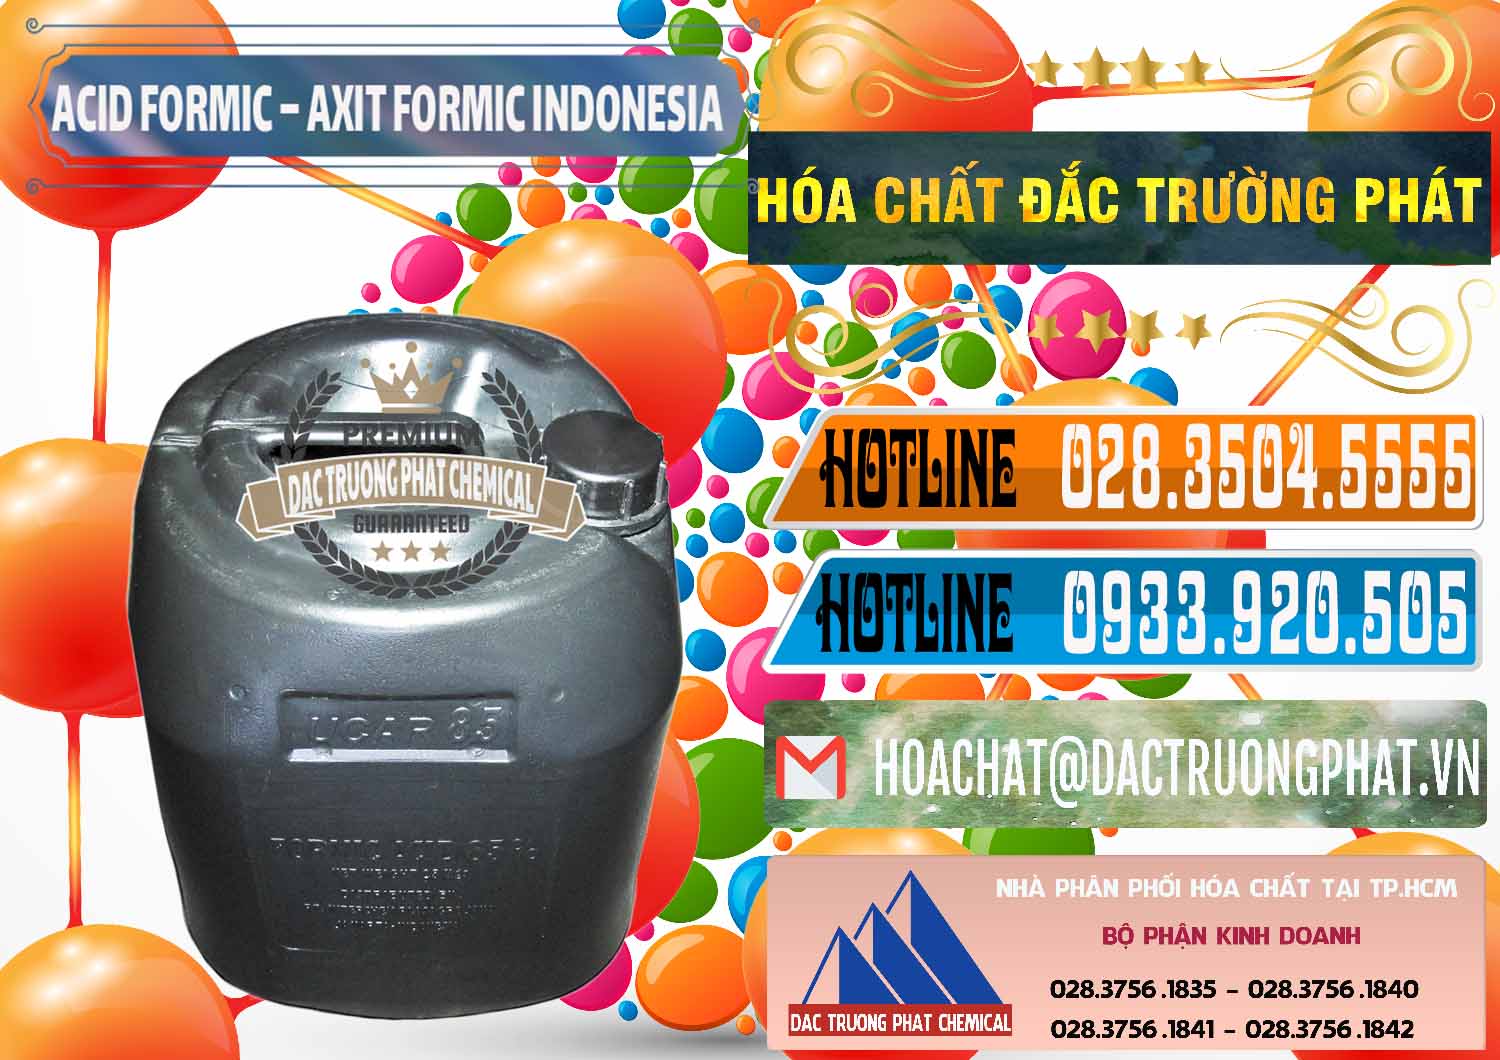 Nơi chuyên bán ( cung cấp ) Acid Formic - Axit Formic Indonesia - 0026 - Nơi chuyên bán & cung cấp hóa chất tại TP.HCM - stmp.net